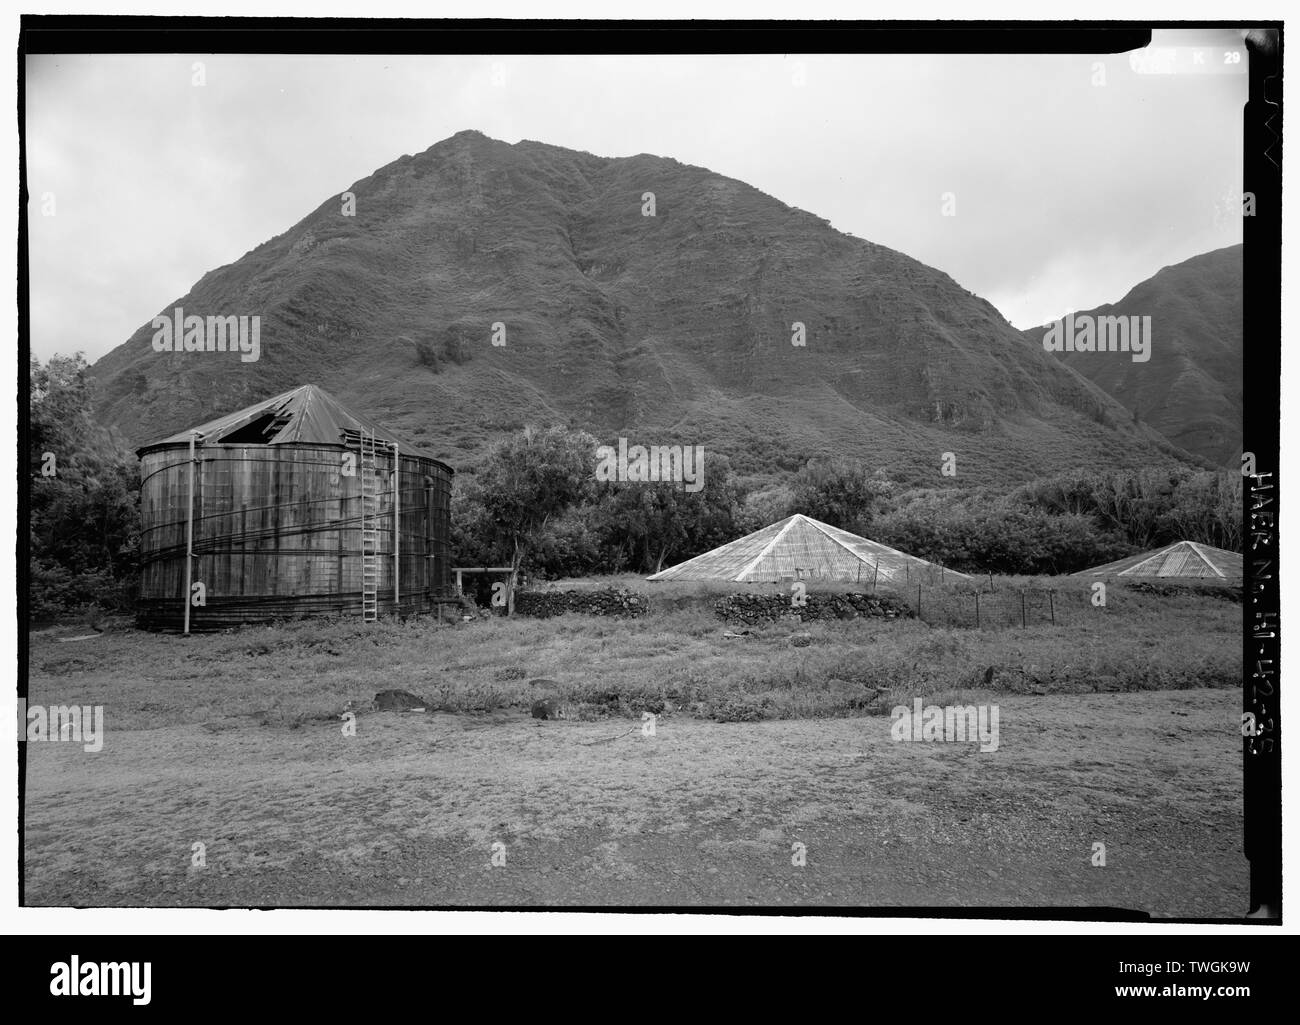 Serbatoi lungo DAMIEN ROAD VICINO AL CRATERE KAUHAKO (282'). Serbatoio di legno a sinistra è stata eretta CA. 1969. Il cemento rivestito di serbatoi in muratura con lamiera ondulata tetto, costruita CA. 1894, sono situati a destra. - Kalaupapa sistema di approvvigionamento di acqua, Waikolu Valle di Kalaupapa insediamento, isola di Molokai, Kalaupapa, Kalawao County, HI Foto Stock